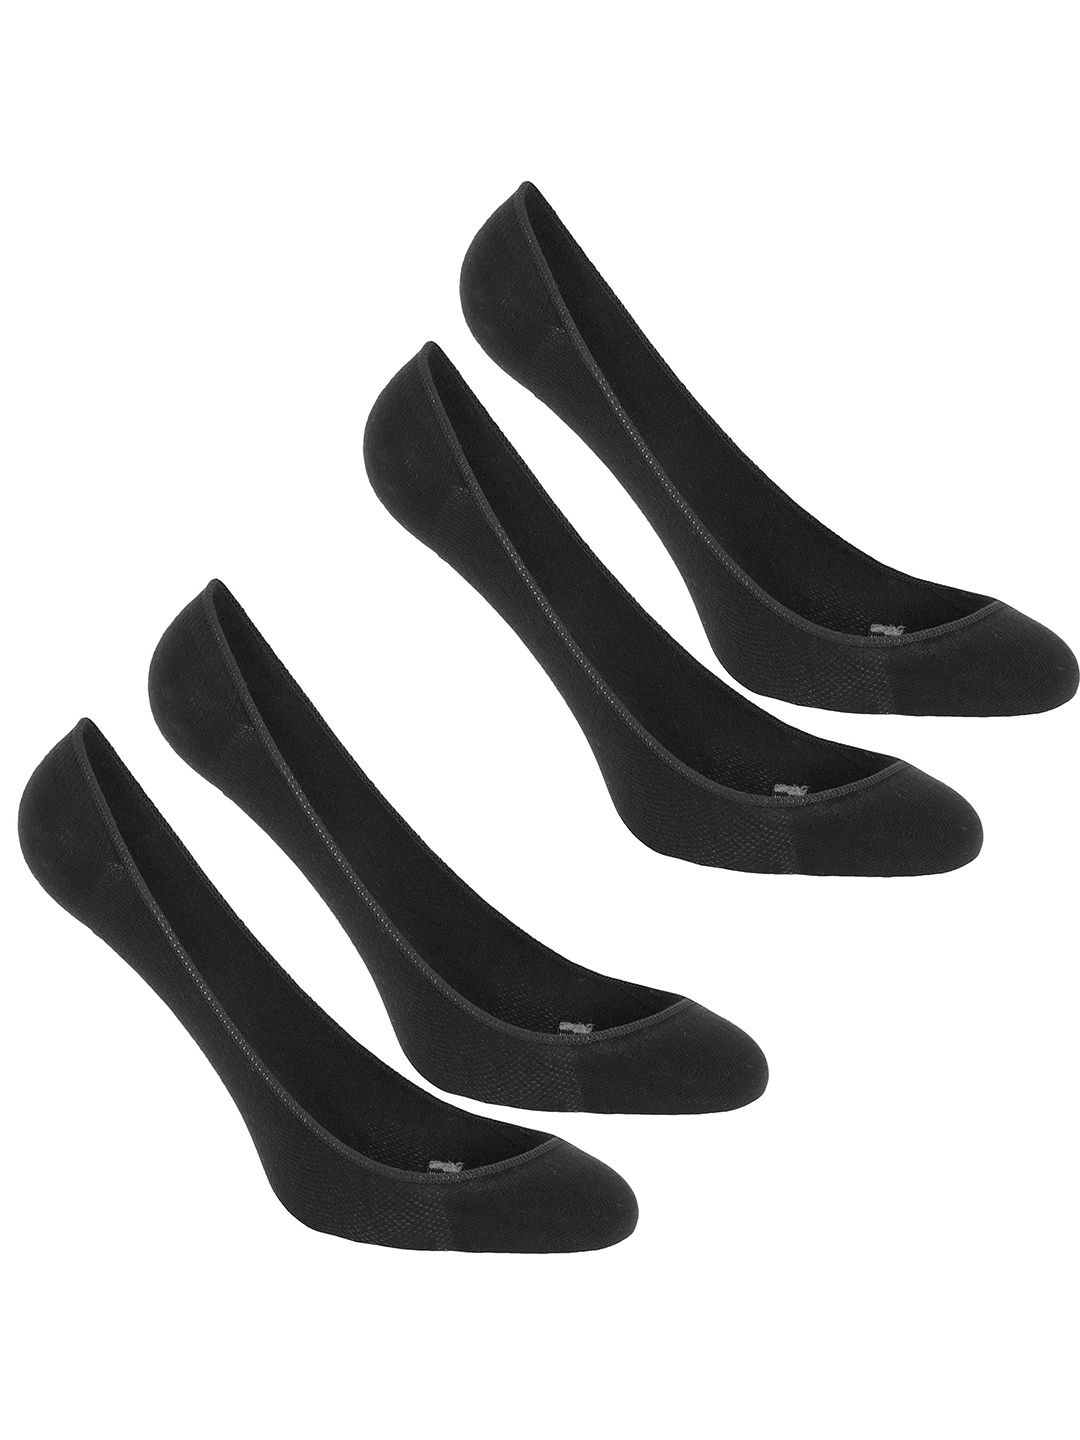 Newfeel By Decathlon Unisex Black Pack Of 4 Socks Price in India